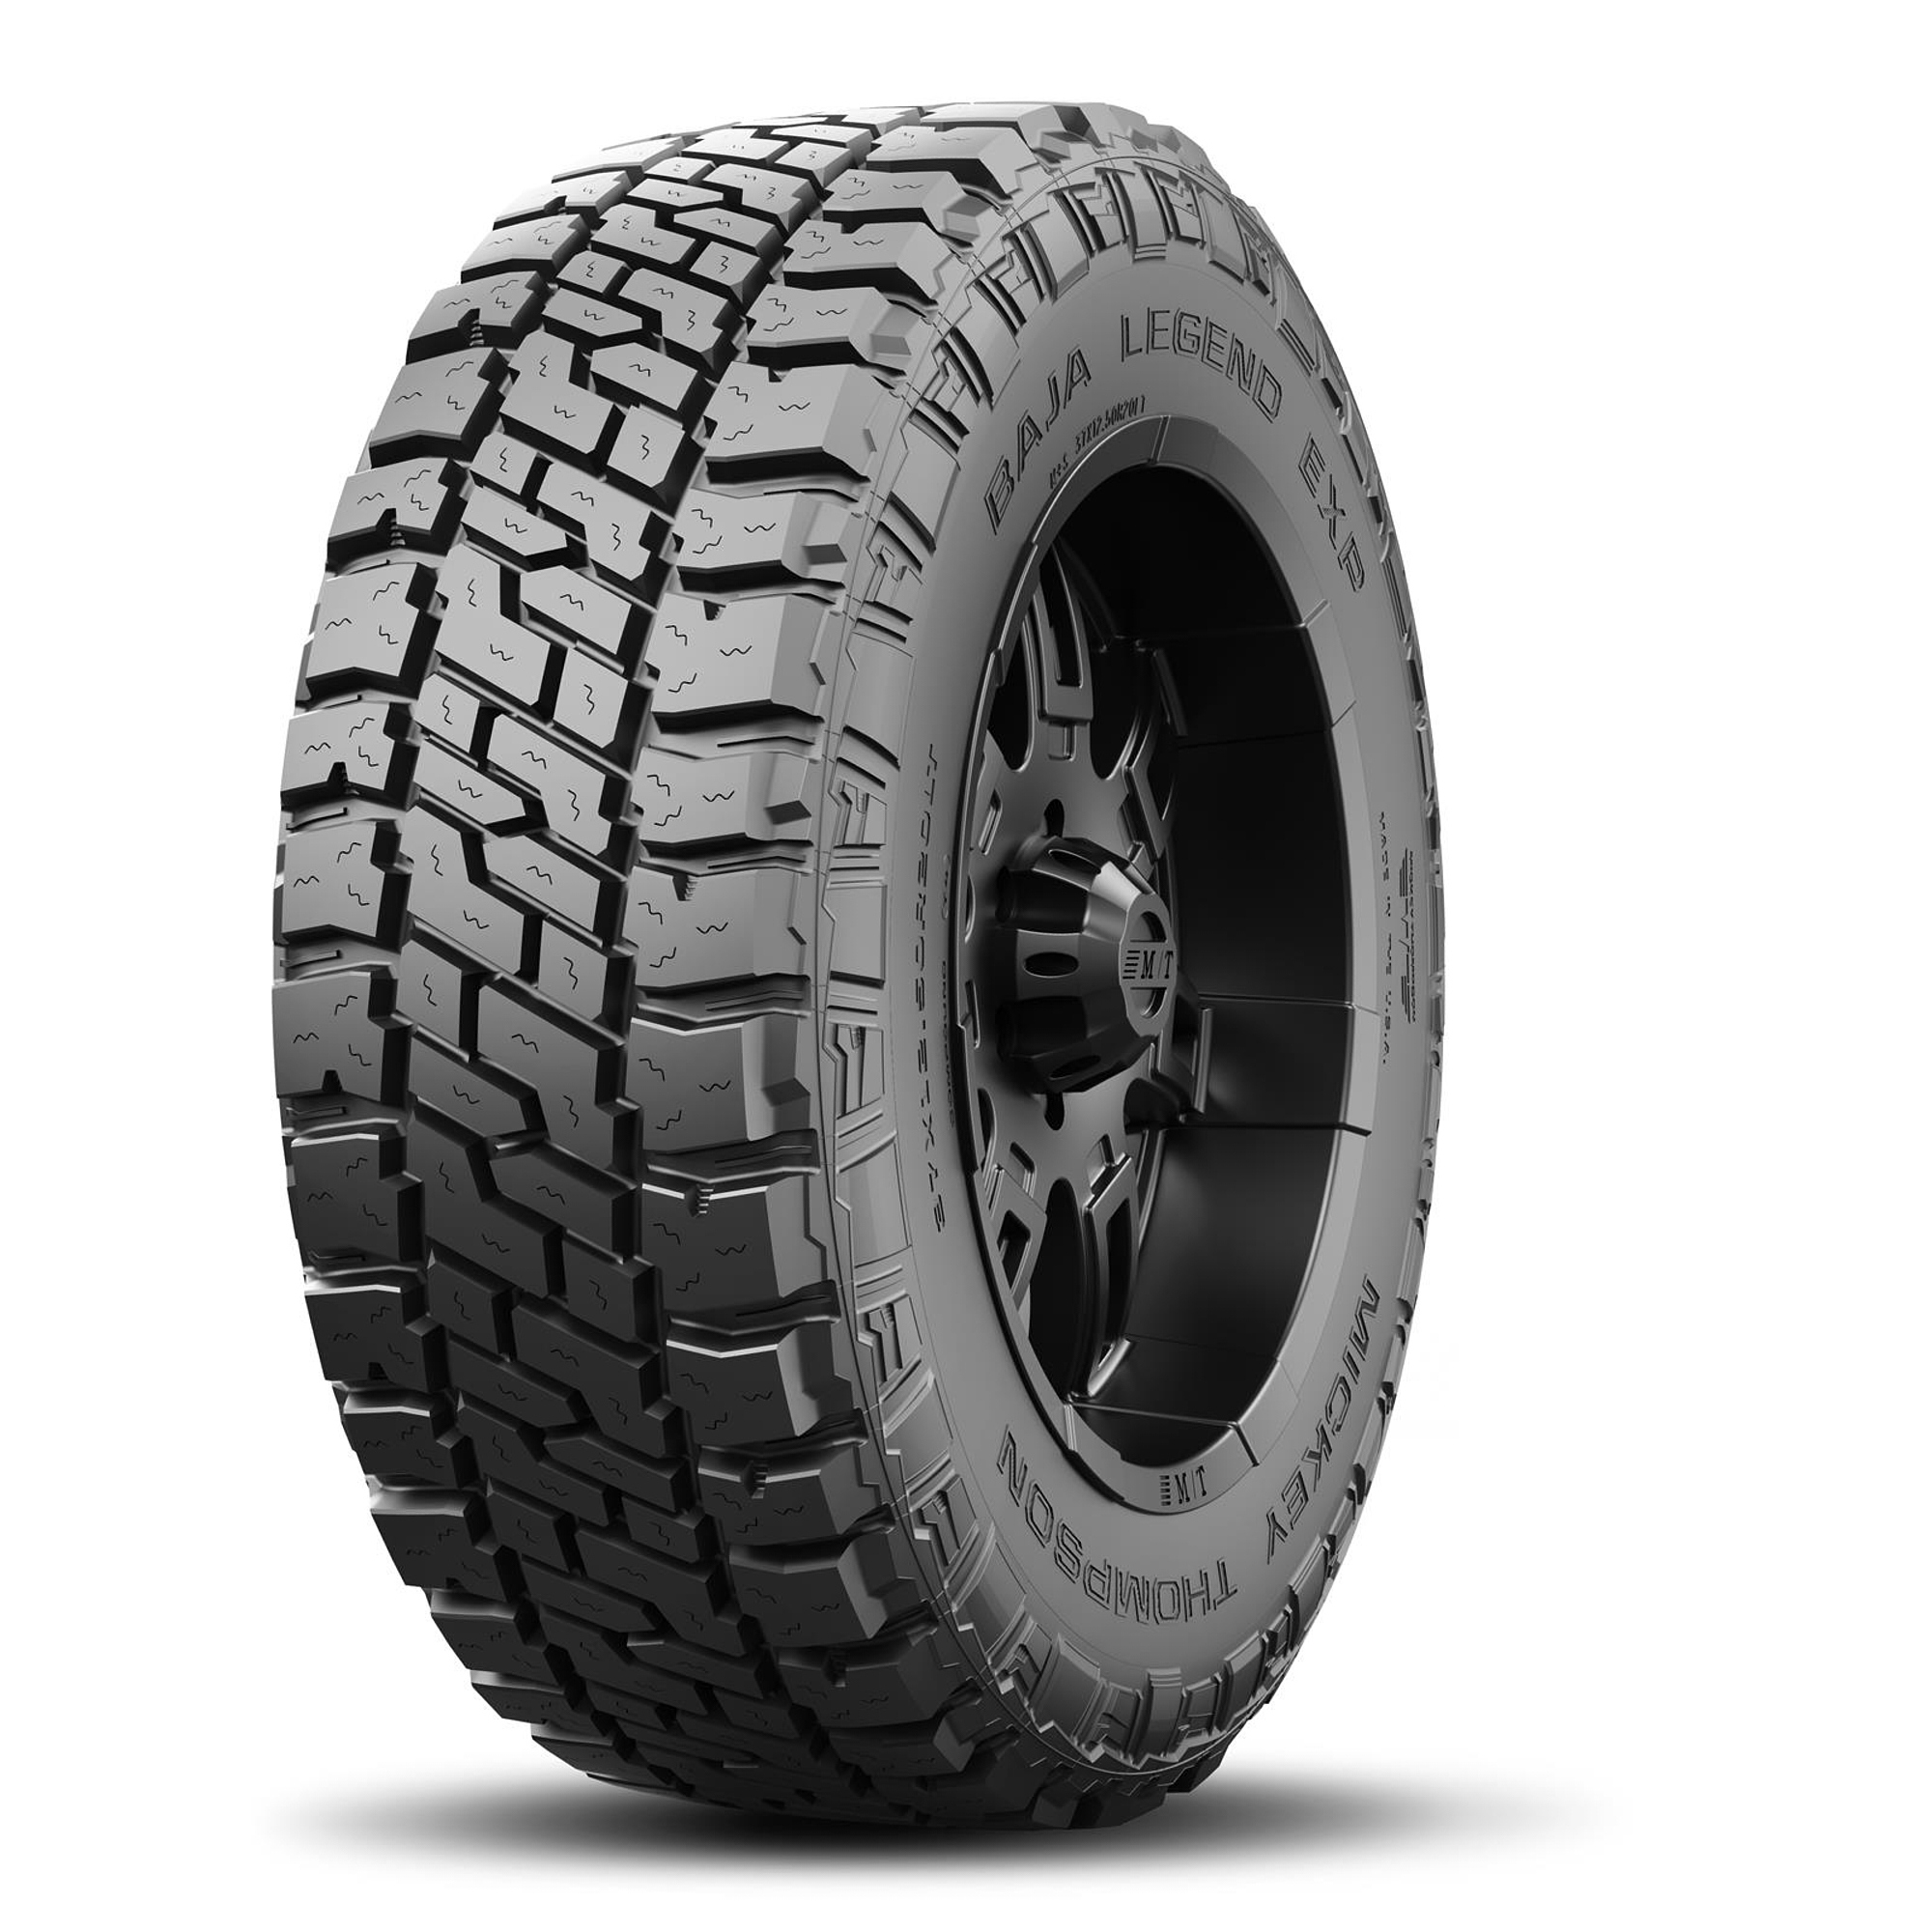 Baja Legend EXP Tire 33X12.50R15LT 108Q - 247541